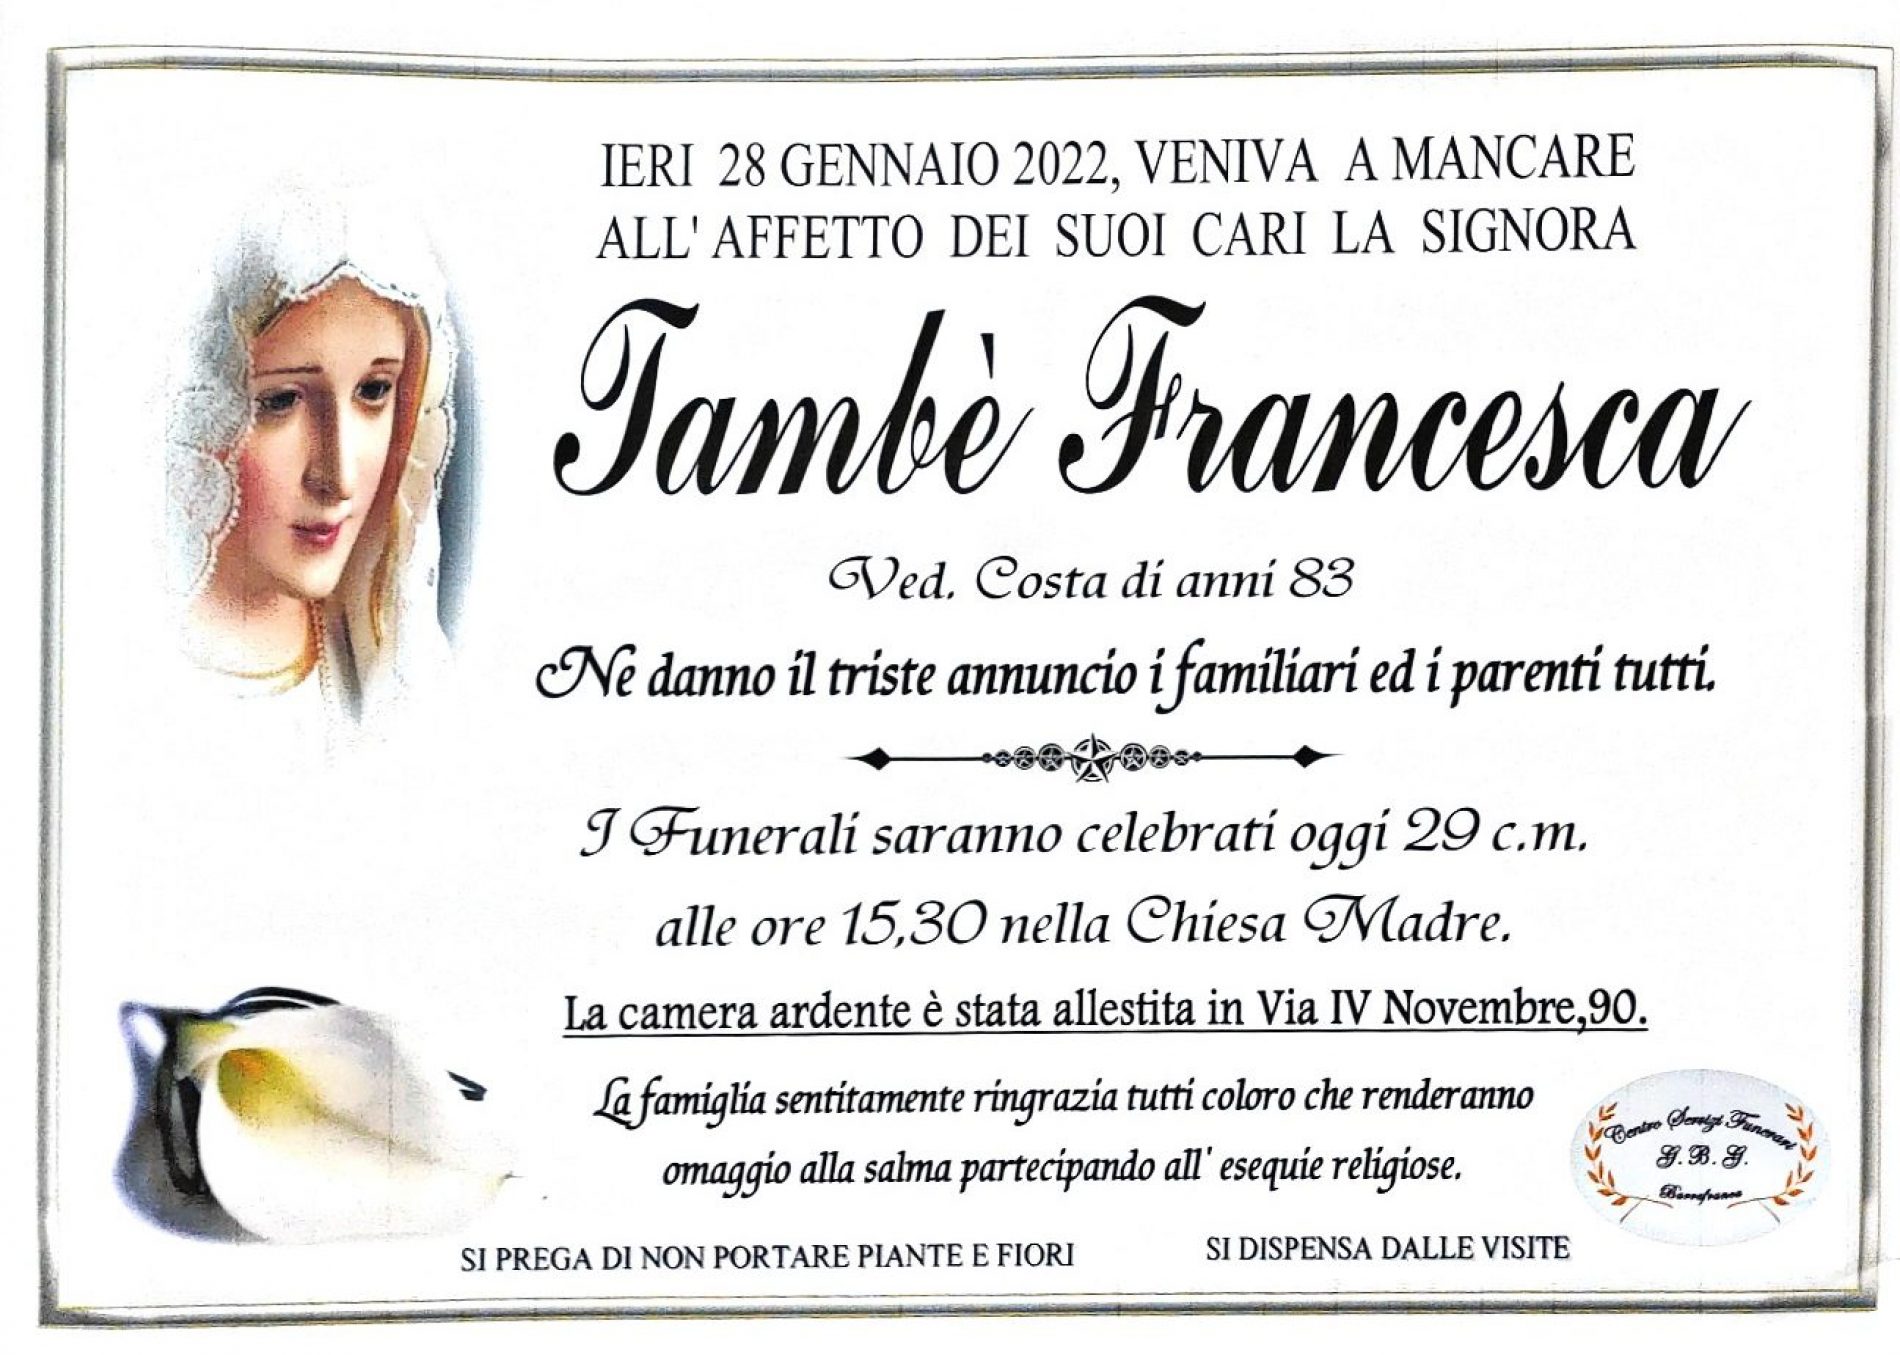 Annuncio servizi funerari agenzia G.B.G. sig.ra Tambè Francesca ved. Costa di anni 83